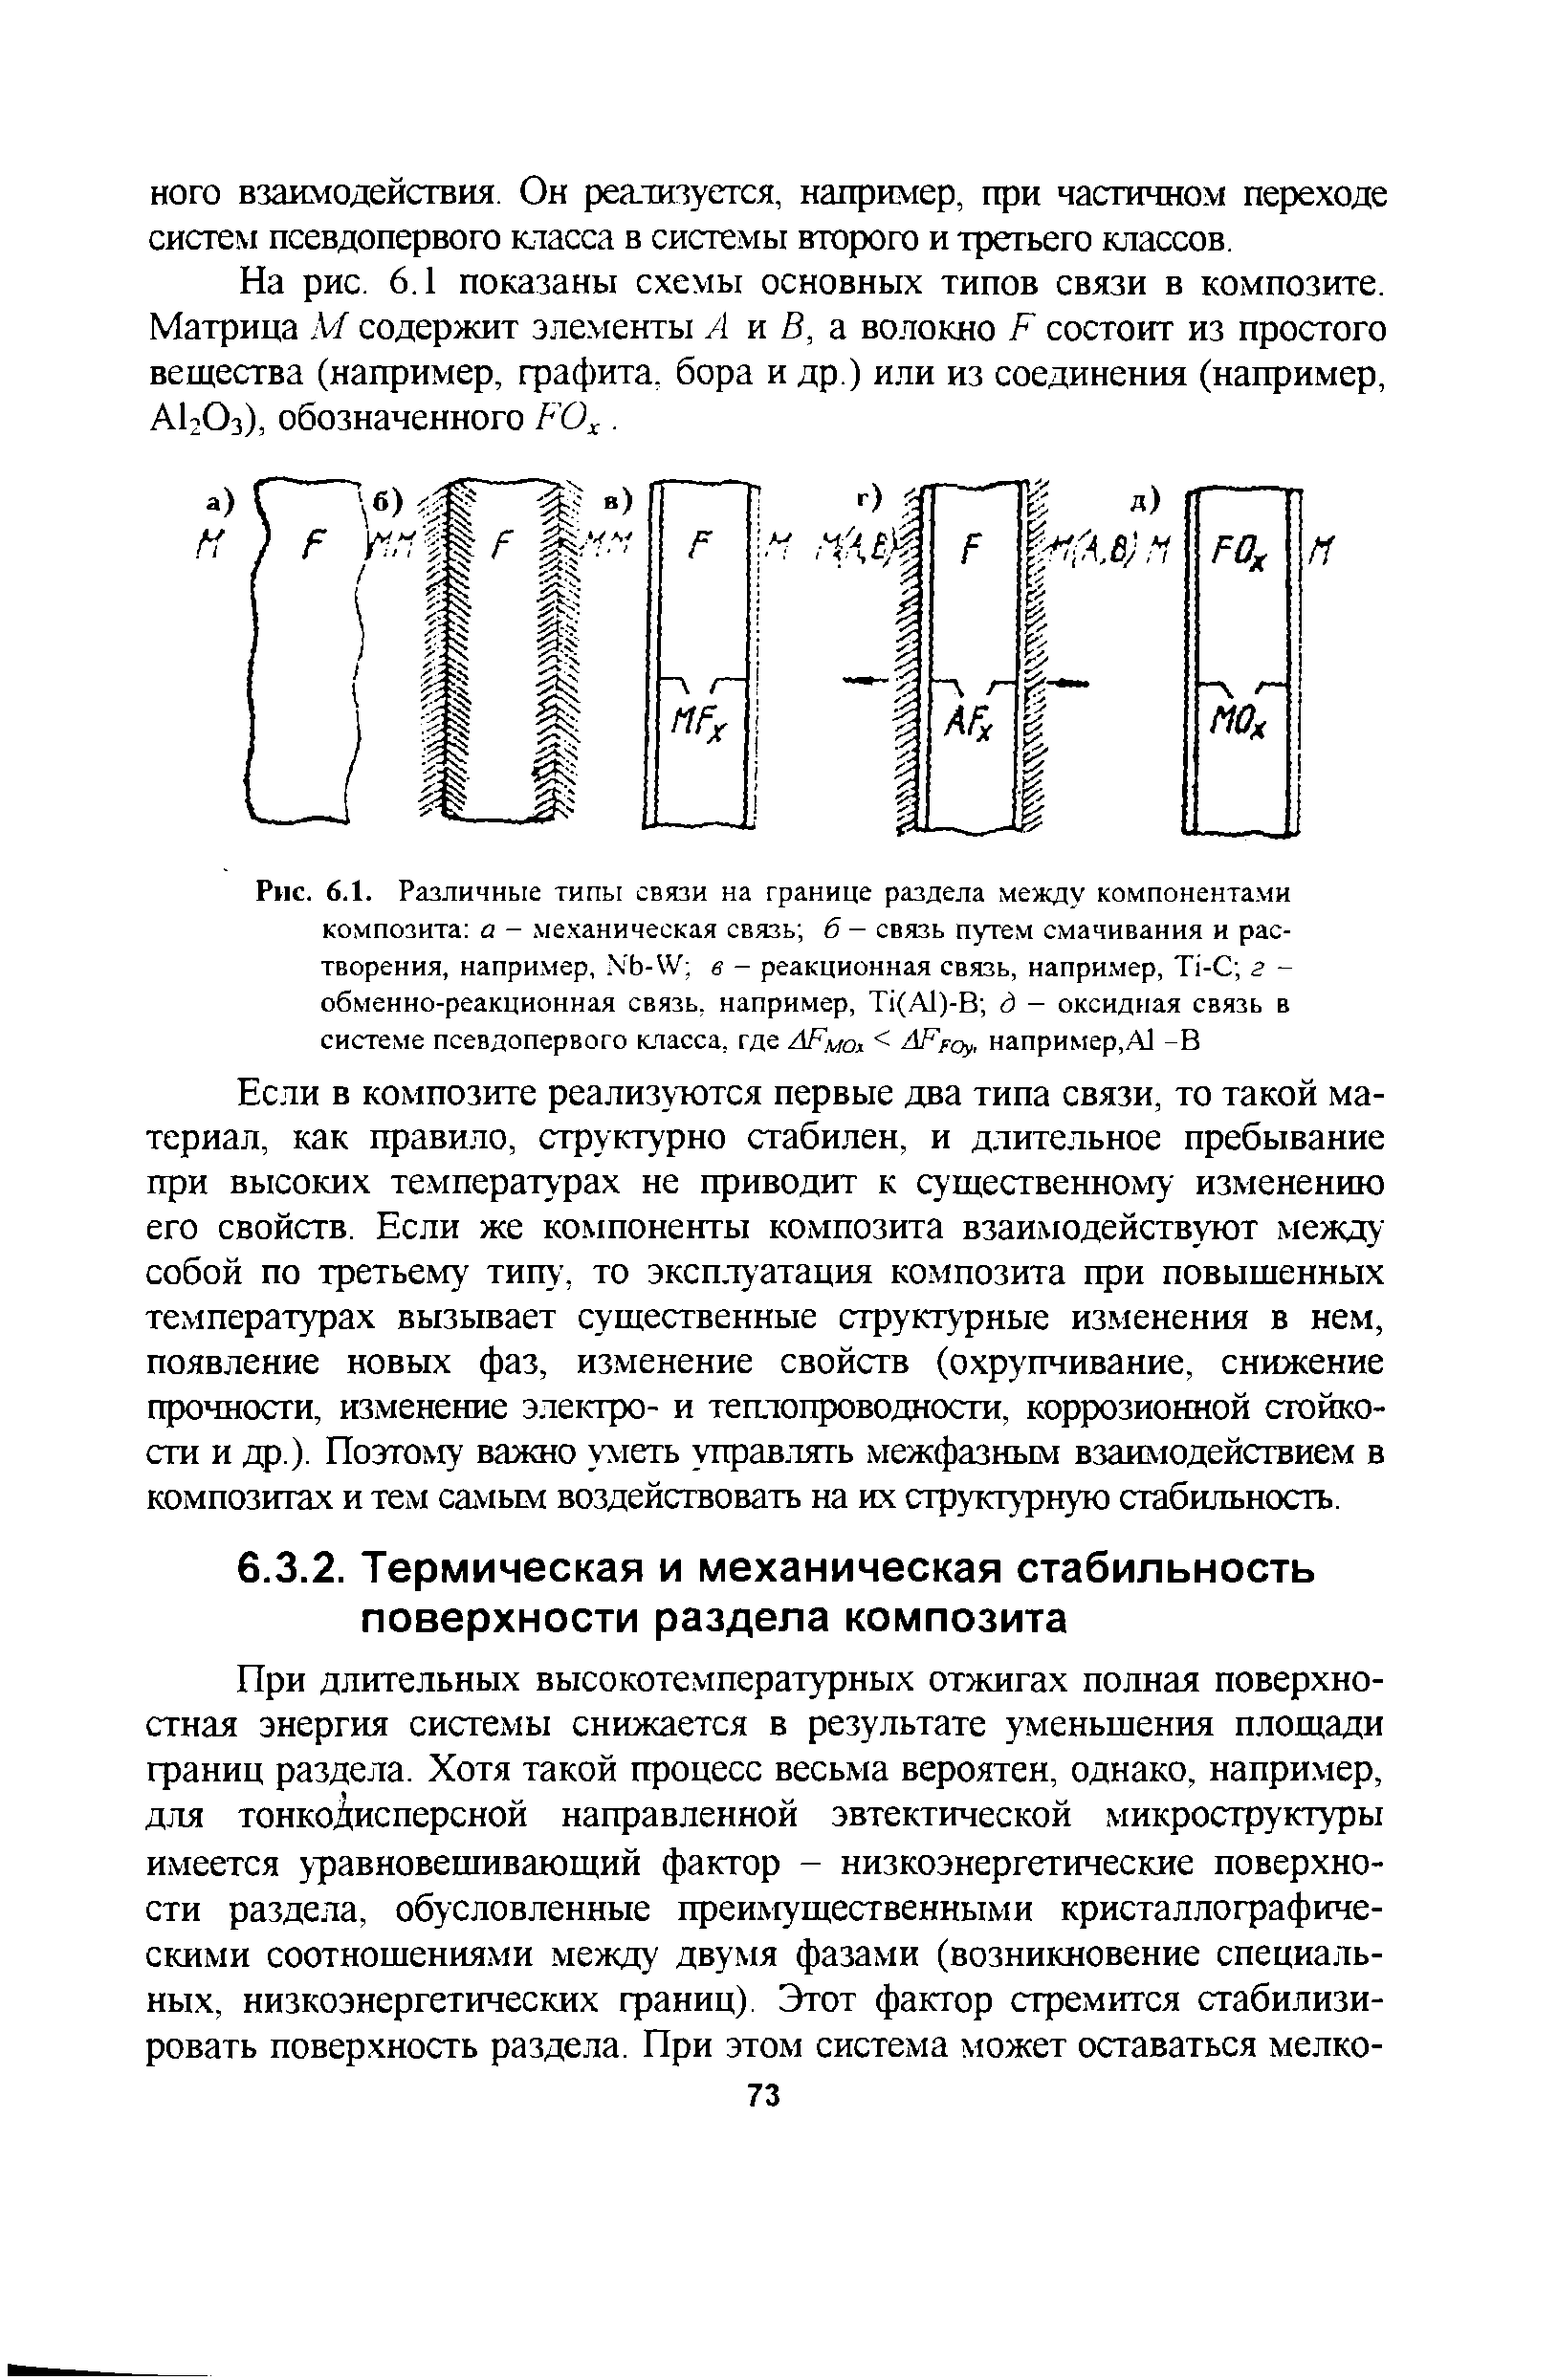 Рис. 6.1. Различные <a href="/info/331838">типы связи</a> на <a href="/info/126816">границе раздела</a> между компонента.ми композита а - ме.ханическая связь 6 - связь путем смачивания и растворения, например,. b-W в - реакционная связь, например, Ti- г -обменно-реакционная связь, например, Ti(Al)-B д - оксидная связь в системе псевдопервого класса, где АРмох < AFpoy, например,А1 -В
